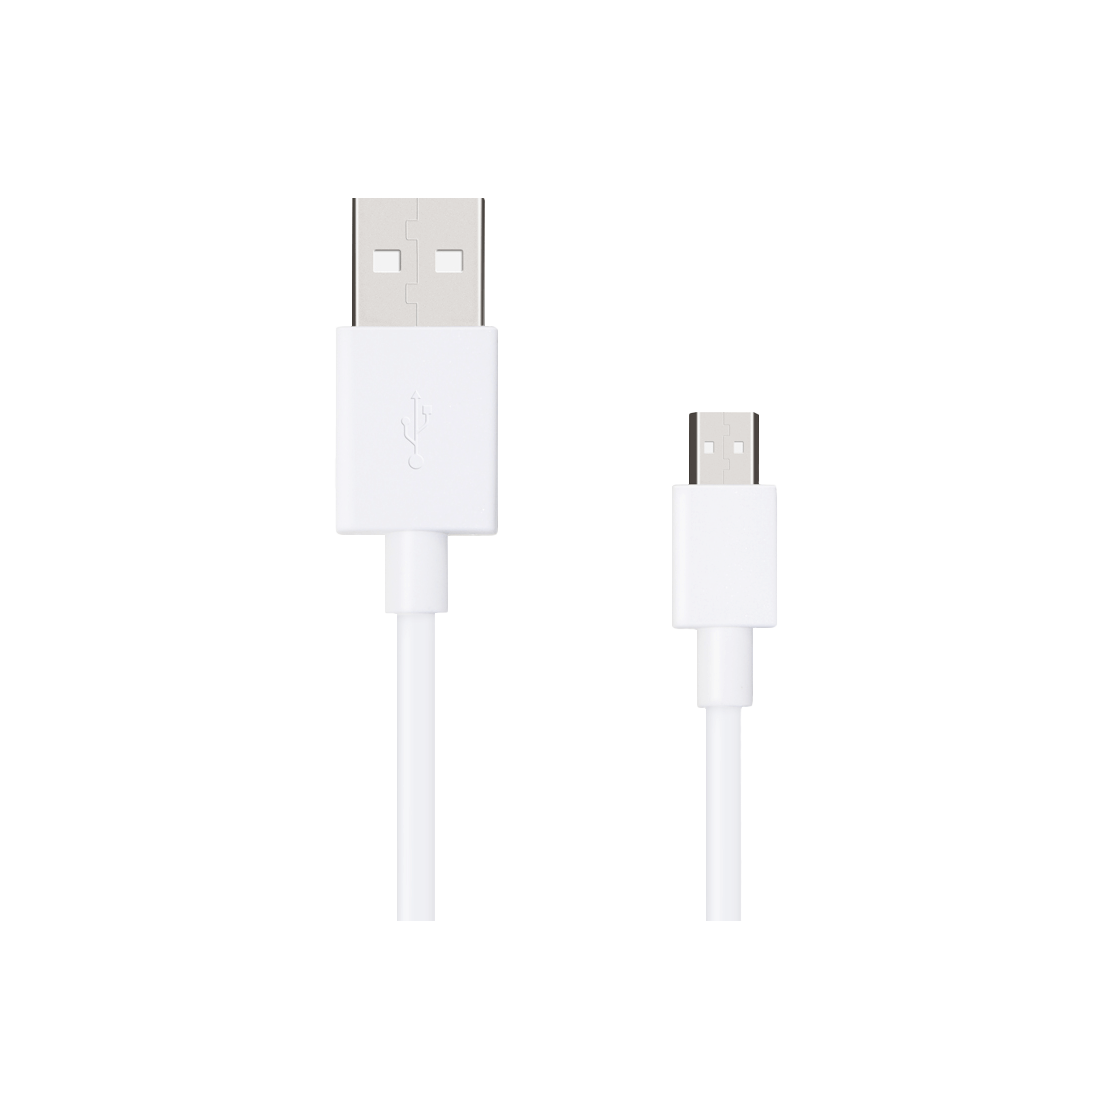 OPPO Non-VOOC Micro USB Cable